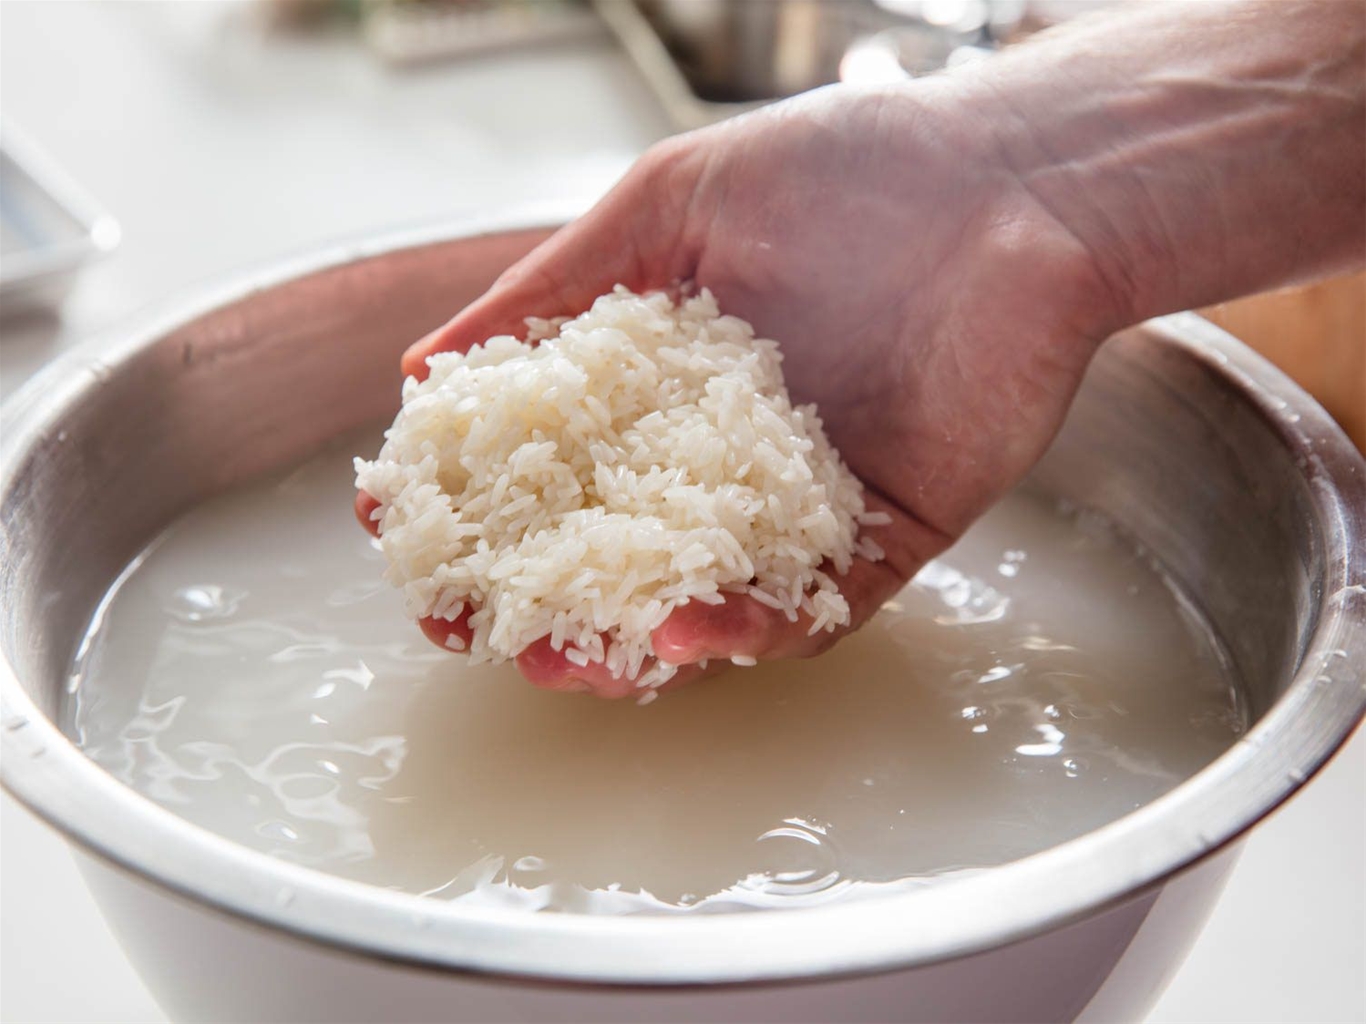 Bạn chỉ nên vo gạo dưới chậu nước sạch khoảng 2 - 3 lần để loại bỏ bụi bẩn